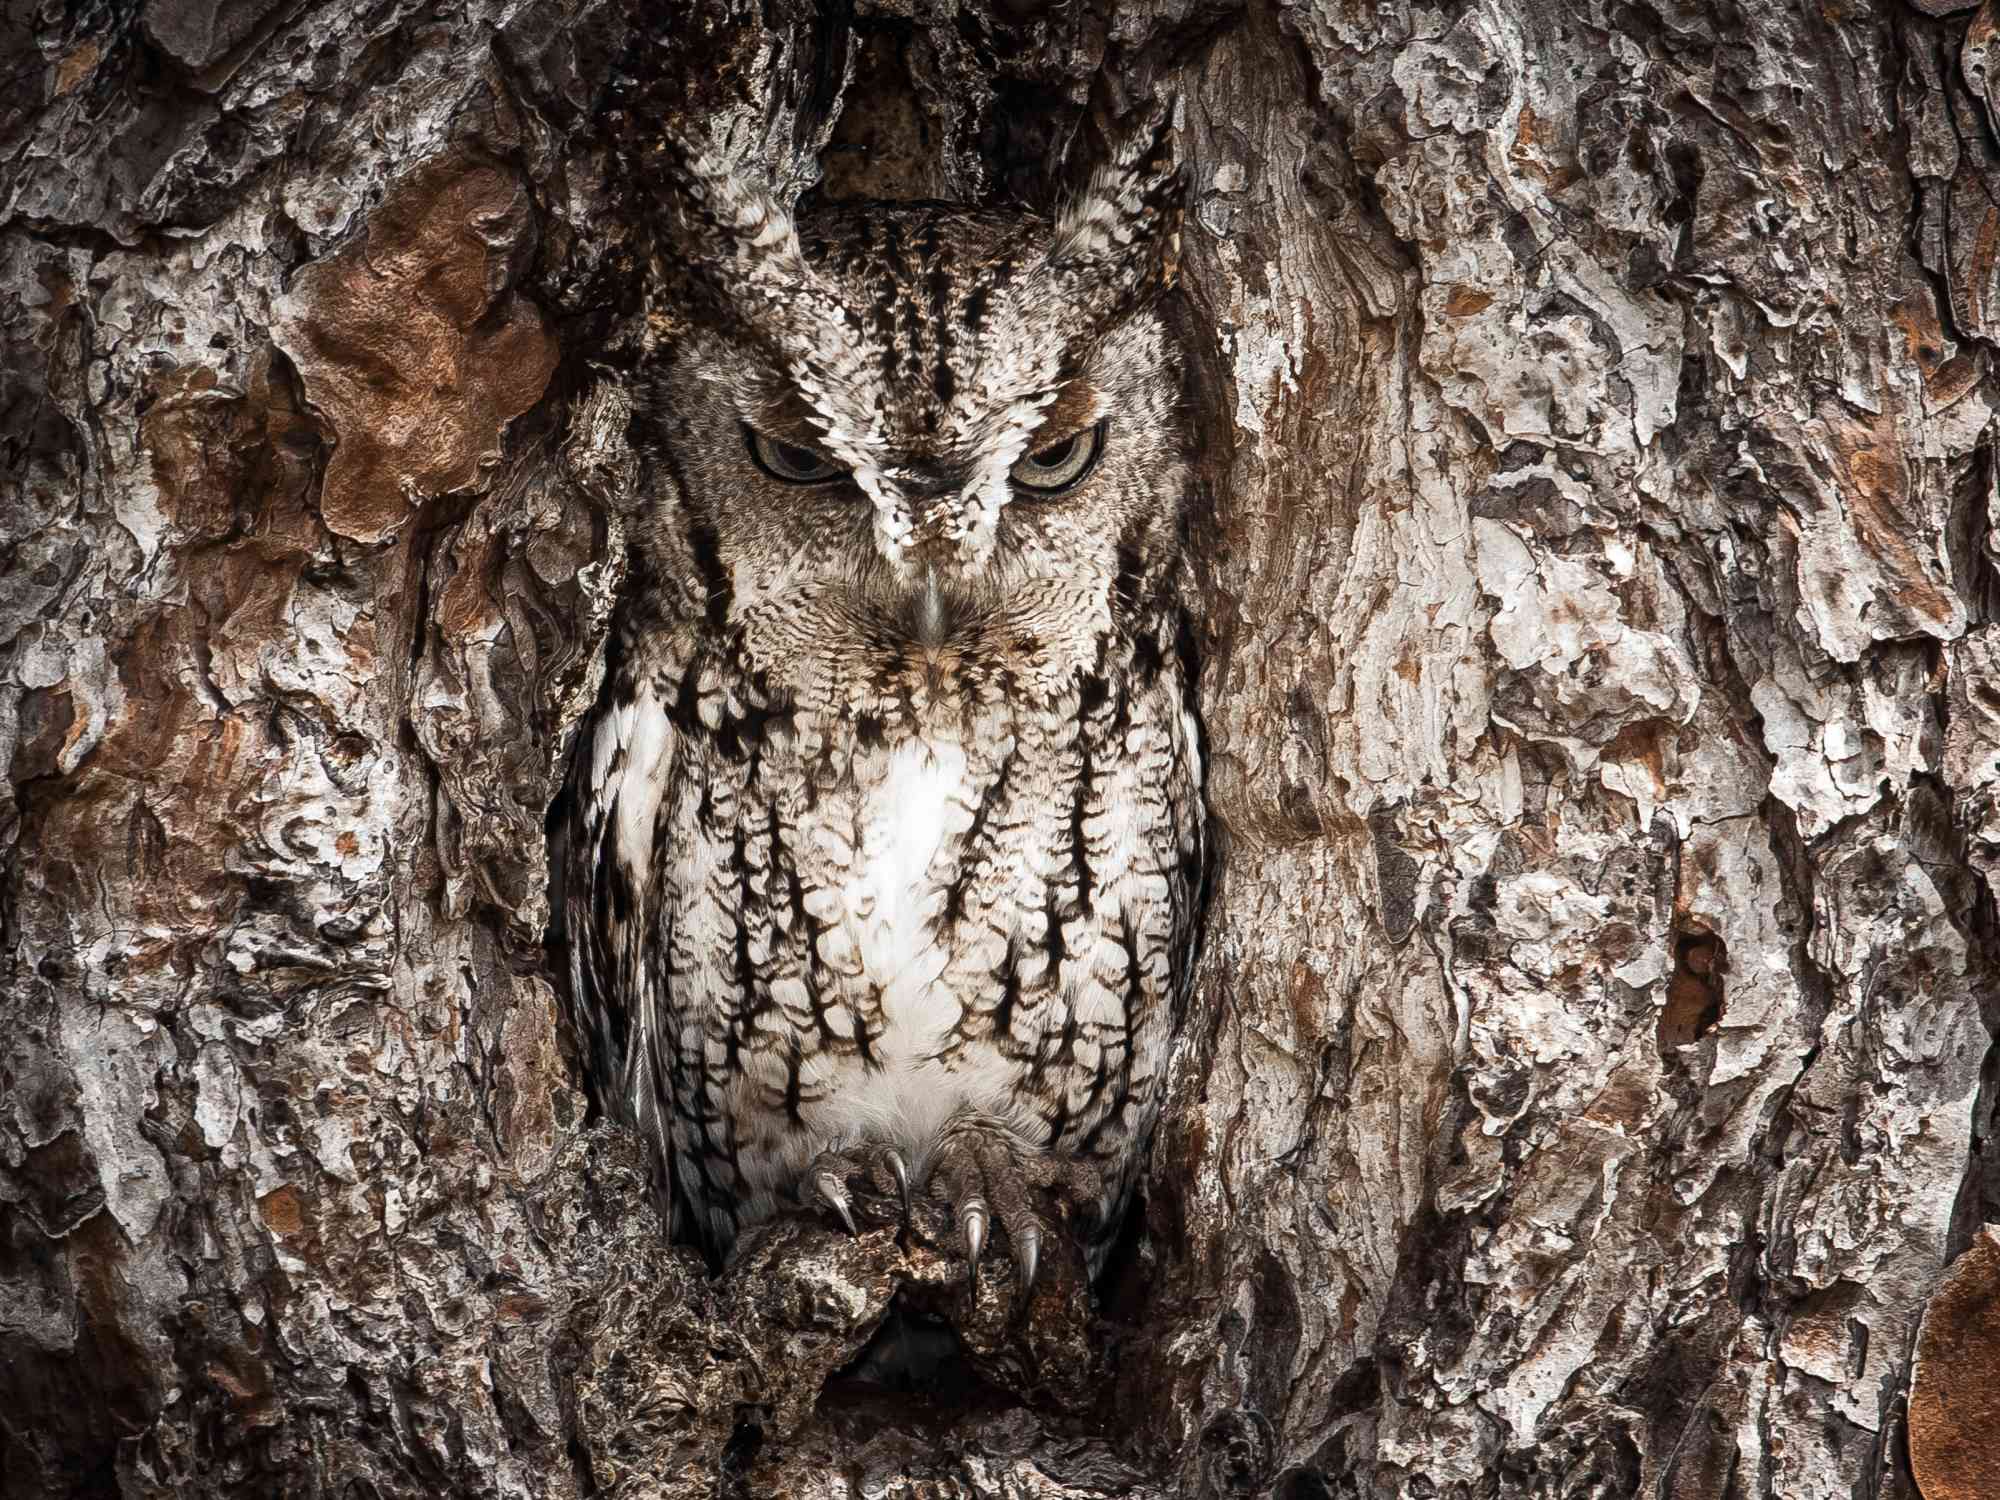 Eastern screech owl hiding in a tree